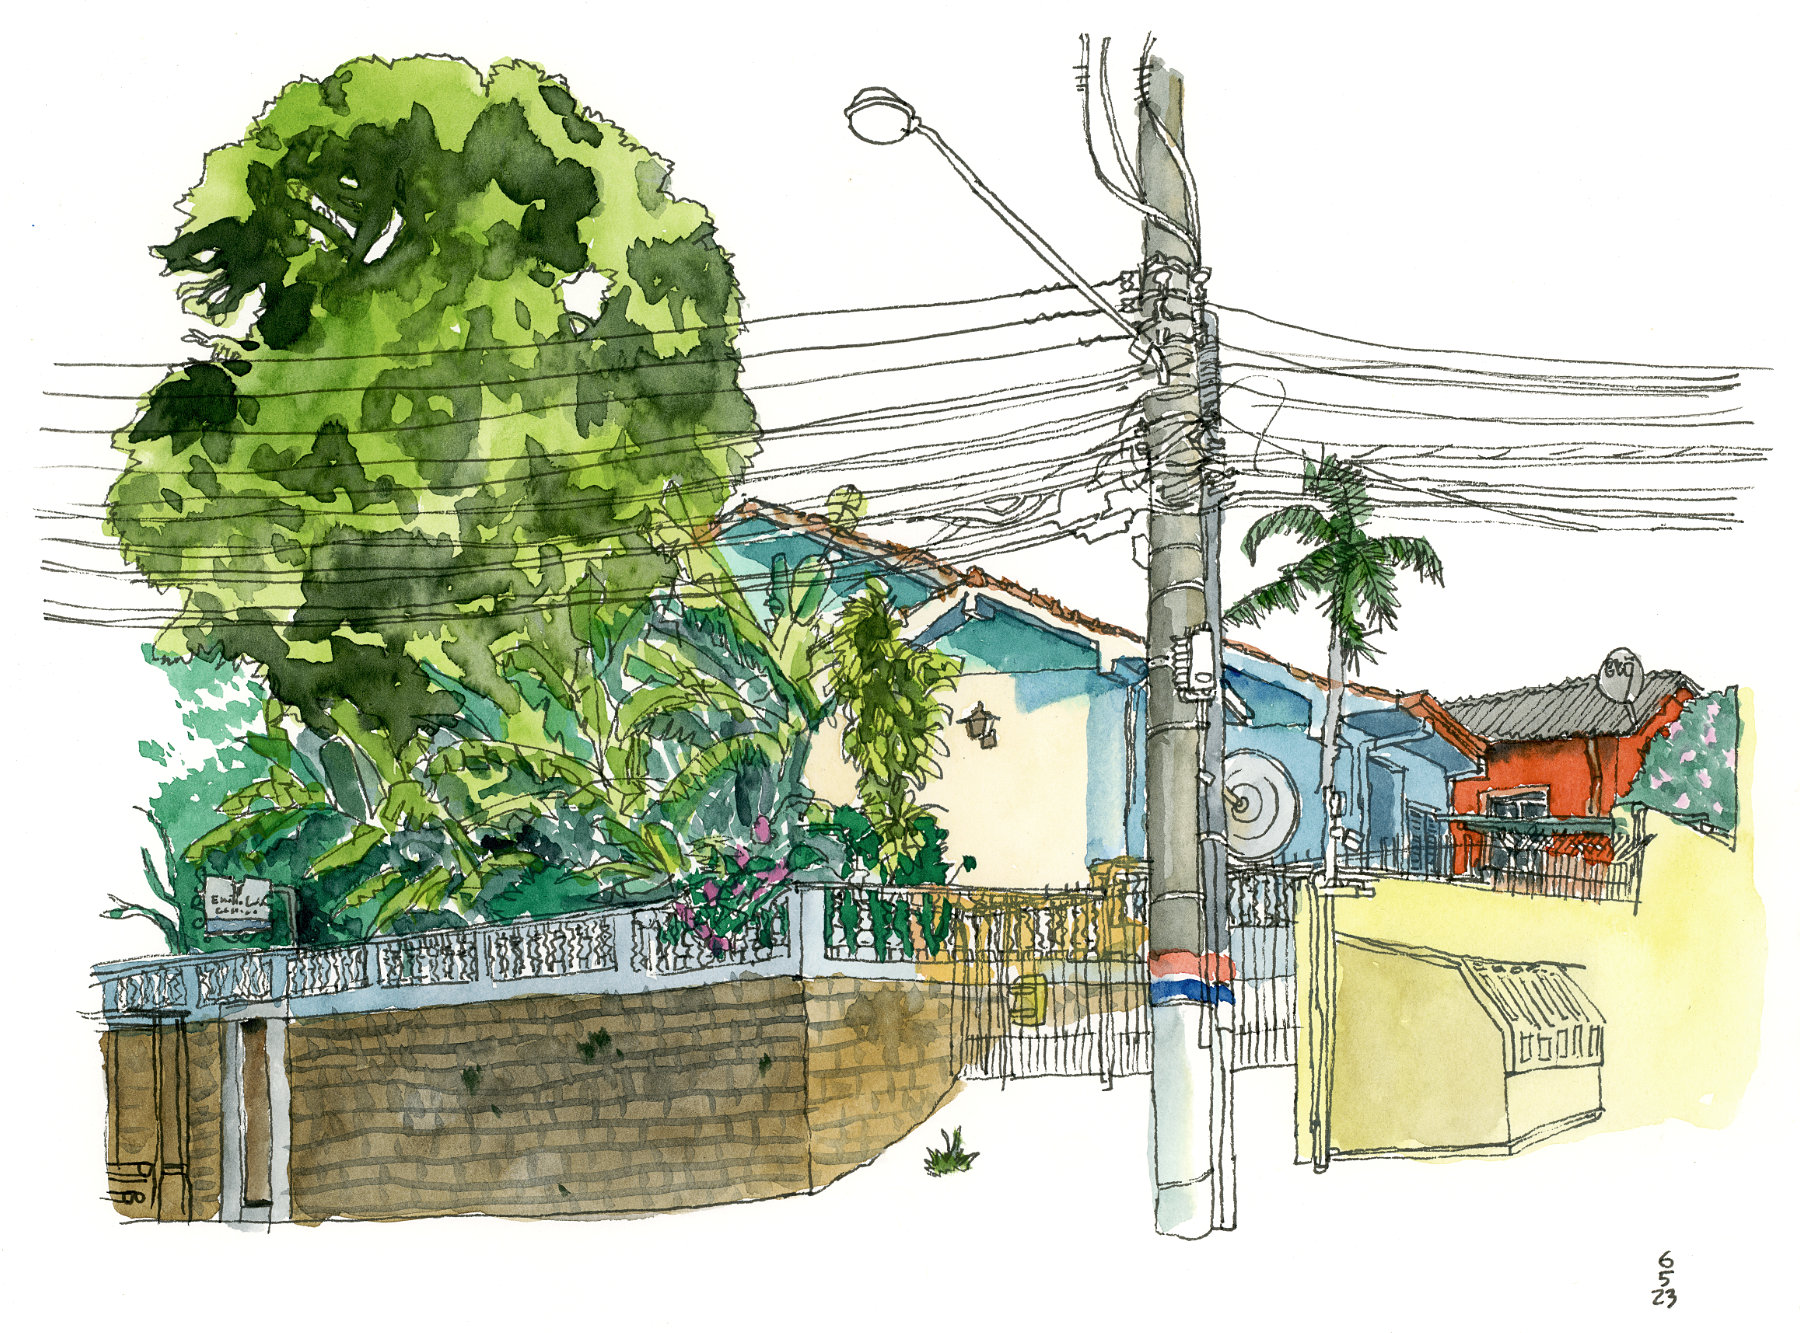 Desenho a traço e colorido com aquarela mostrando duas casas atrás de um muro e de vegetação